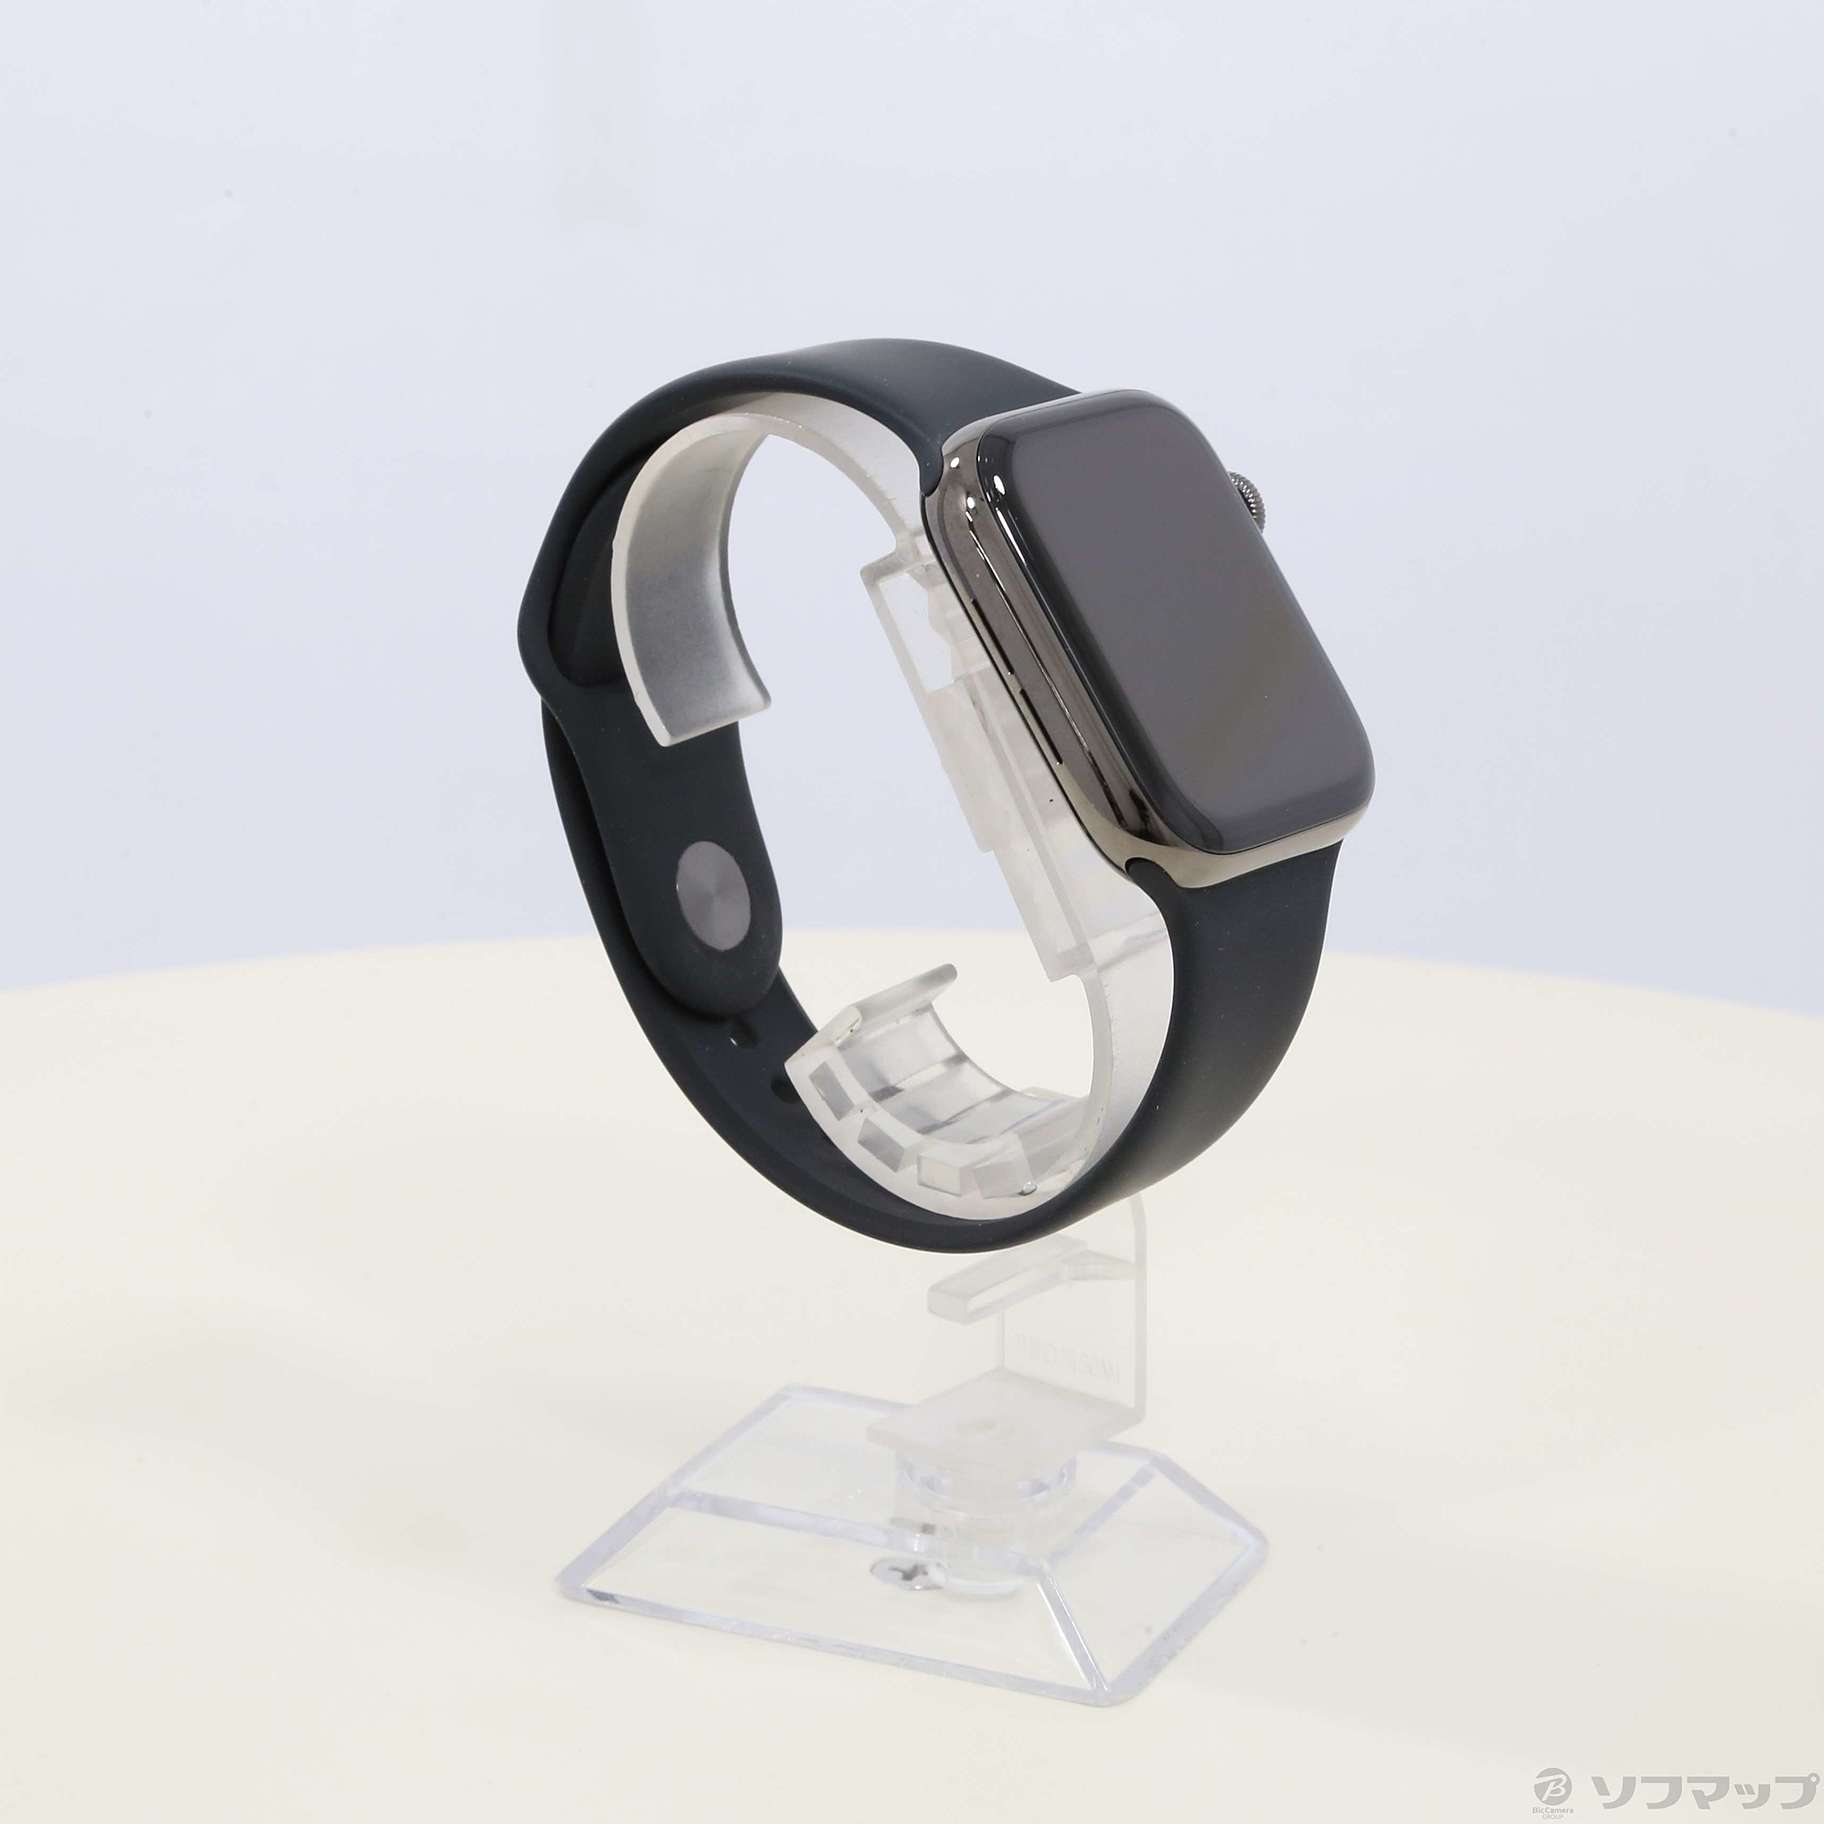 〔展示品〕 Apple Watch Series 6 GPS + Cellular 44mm グラファイトステンレススチールケース  ブラックスポーツバンド